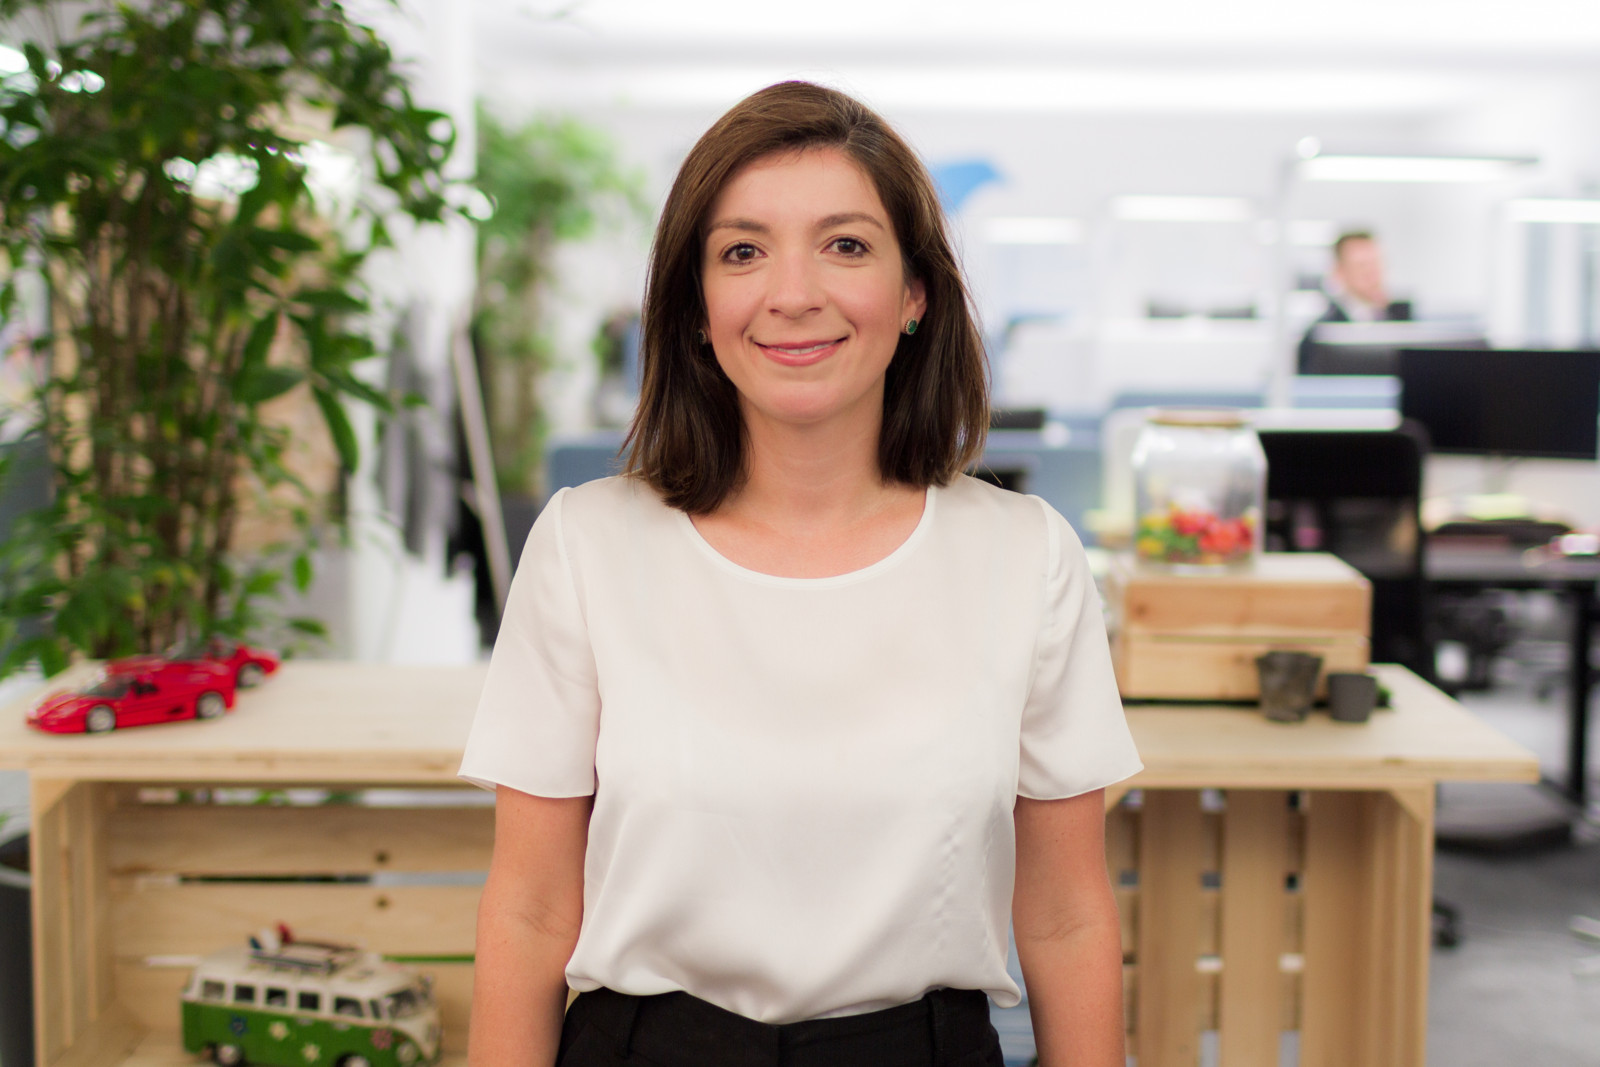 Francine Gervazio, CEO der Avrios- und Vimcar-Mutter Shiftmove, über Strategie und Zukunft des neuen Unternehmens.